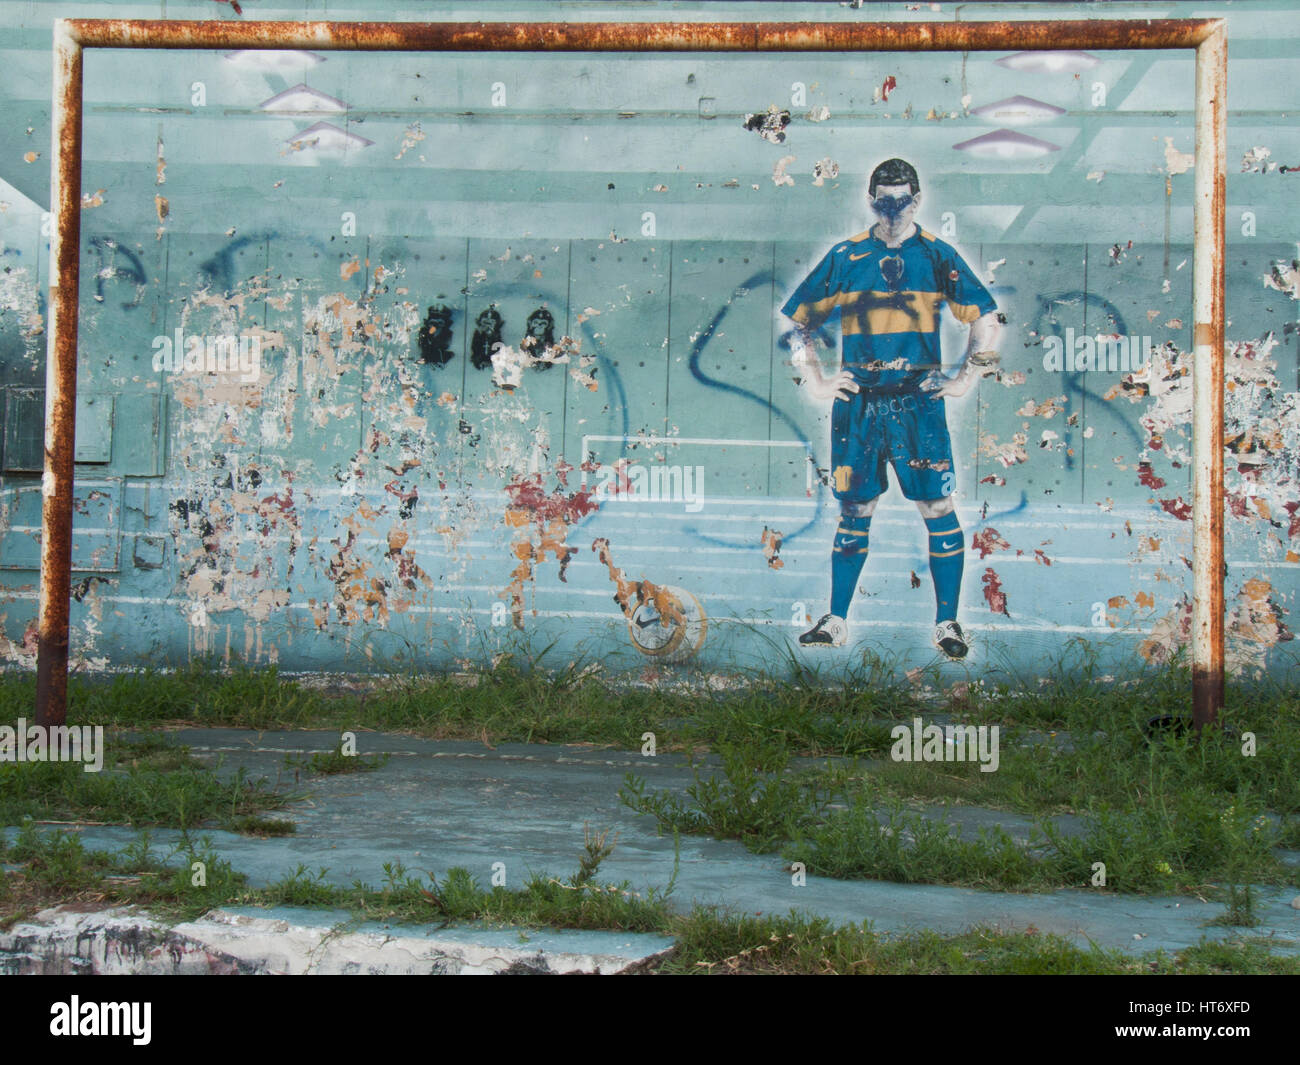 L'équipe de graffiti joueur de football de Boca Juniors sur mur dans le quartier La Boca, Buenos Aires, Argentine. Banque D'Images